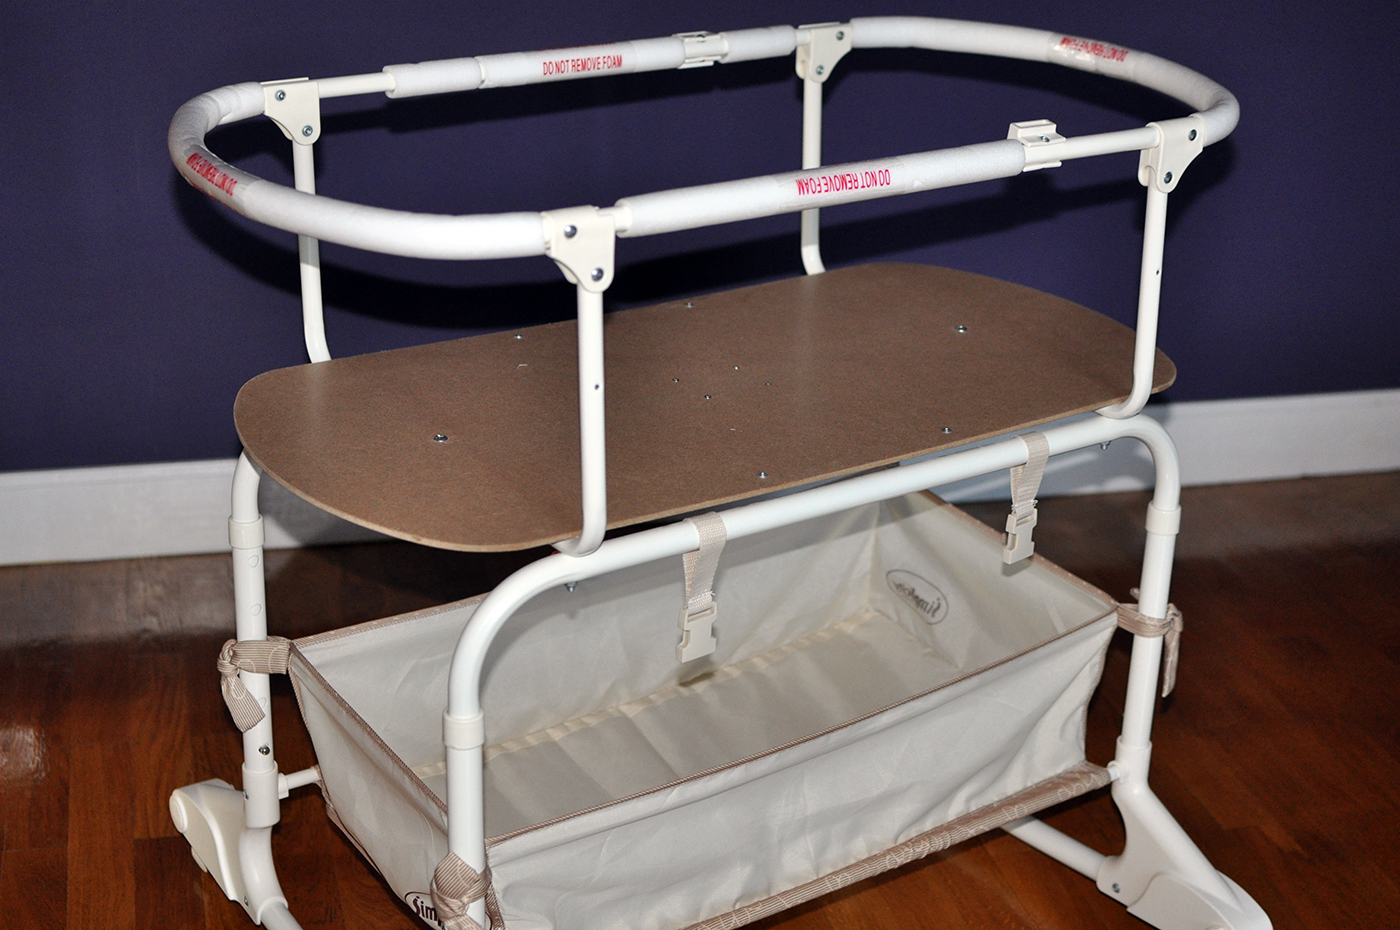 кровать сатурн для новорожденных показания